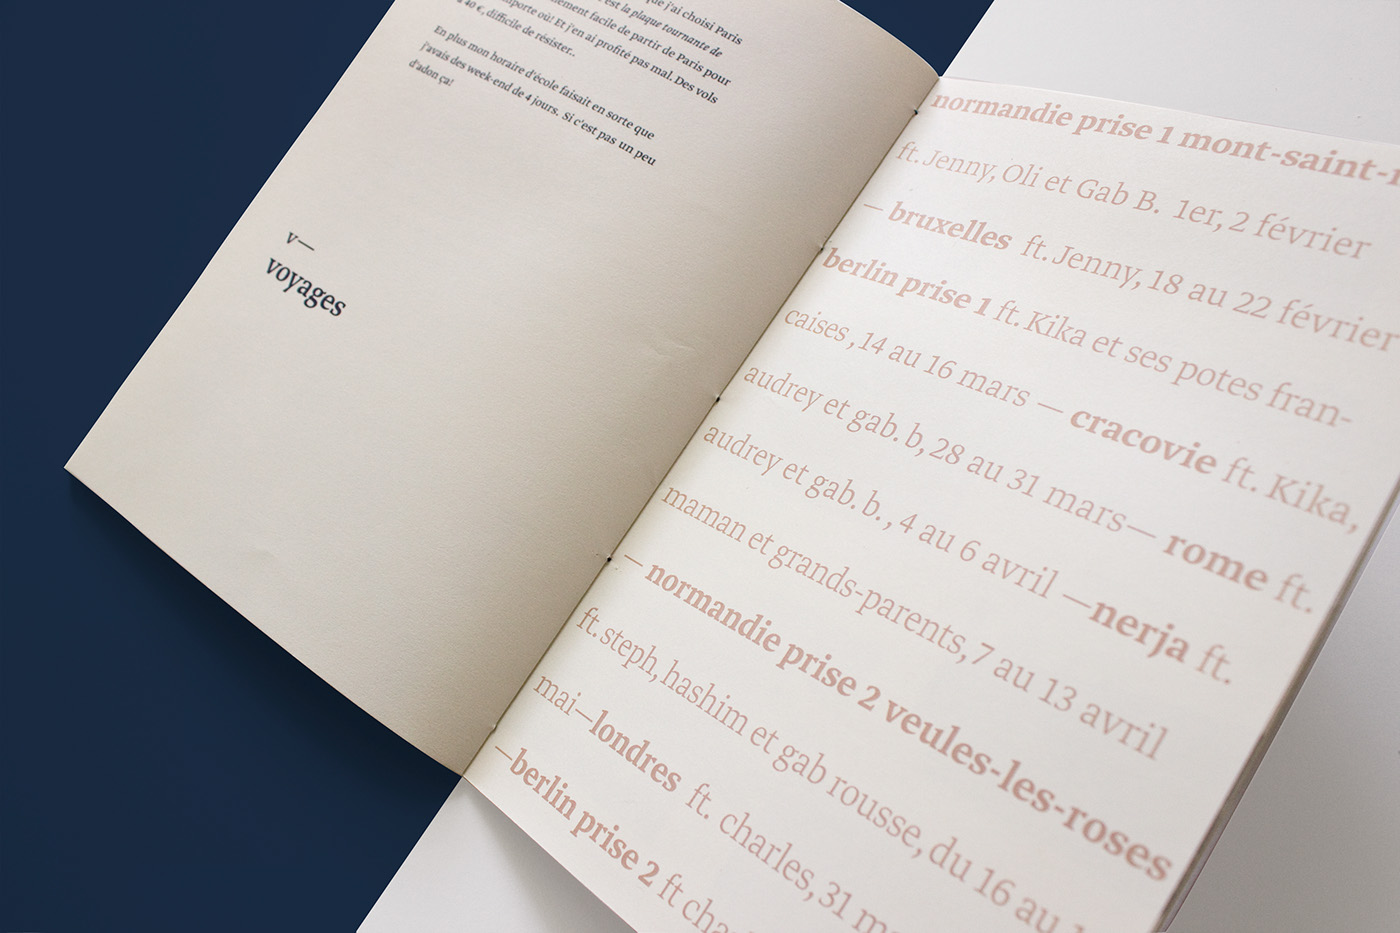 ABC book Travel voyage abédédaire Typographie edition Paris